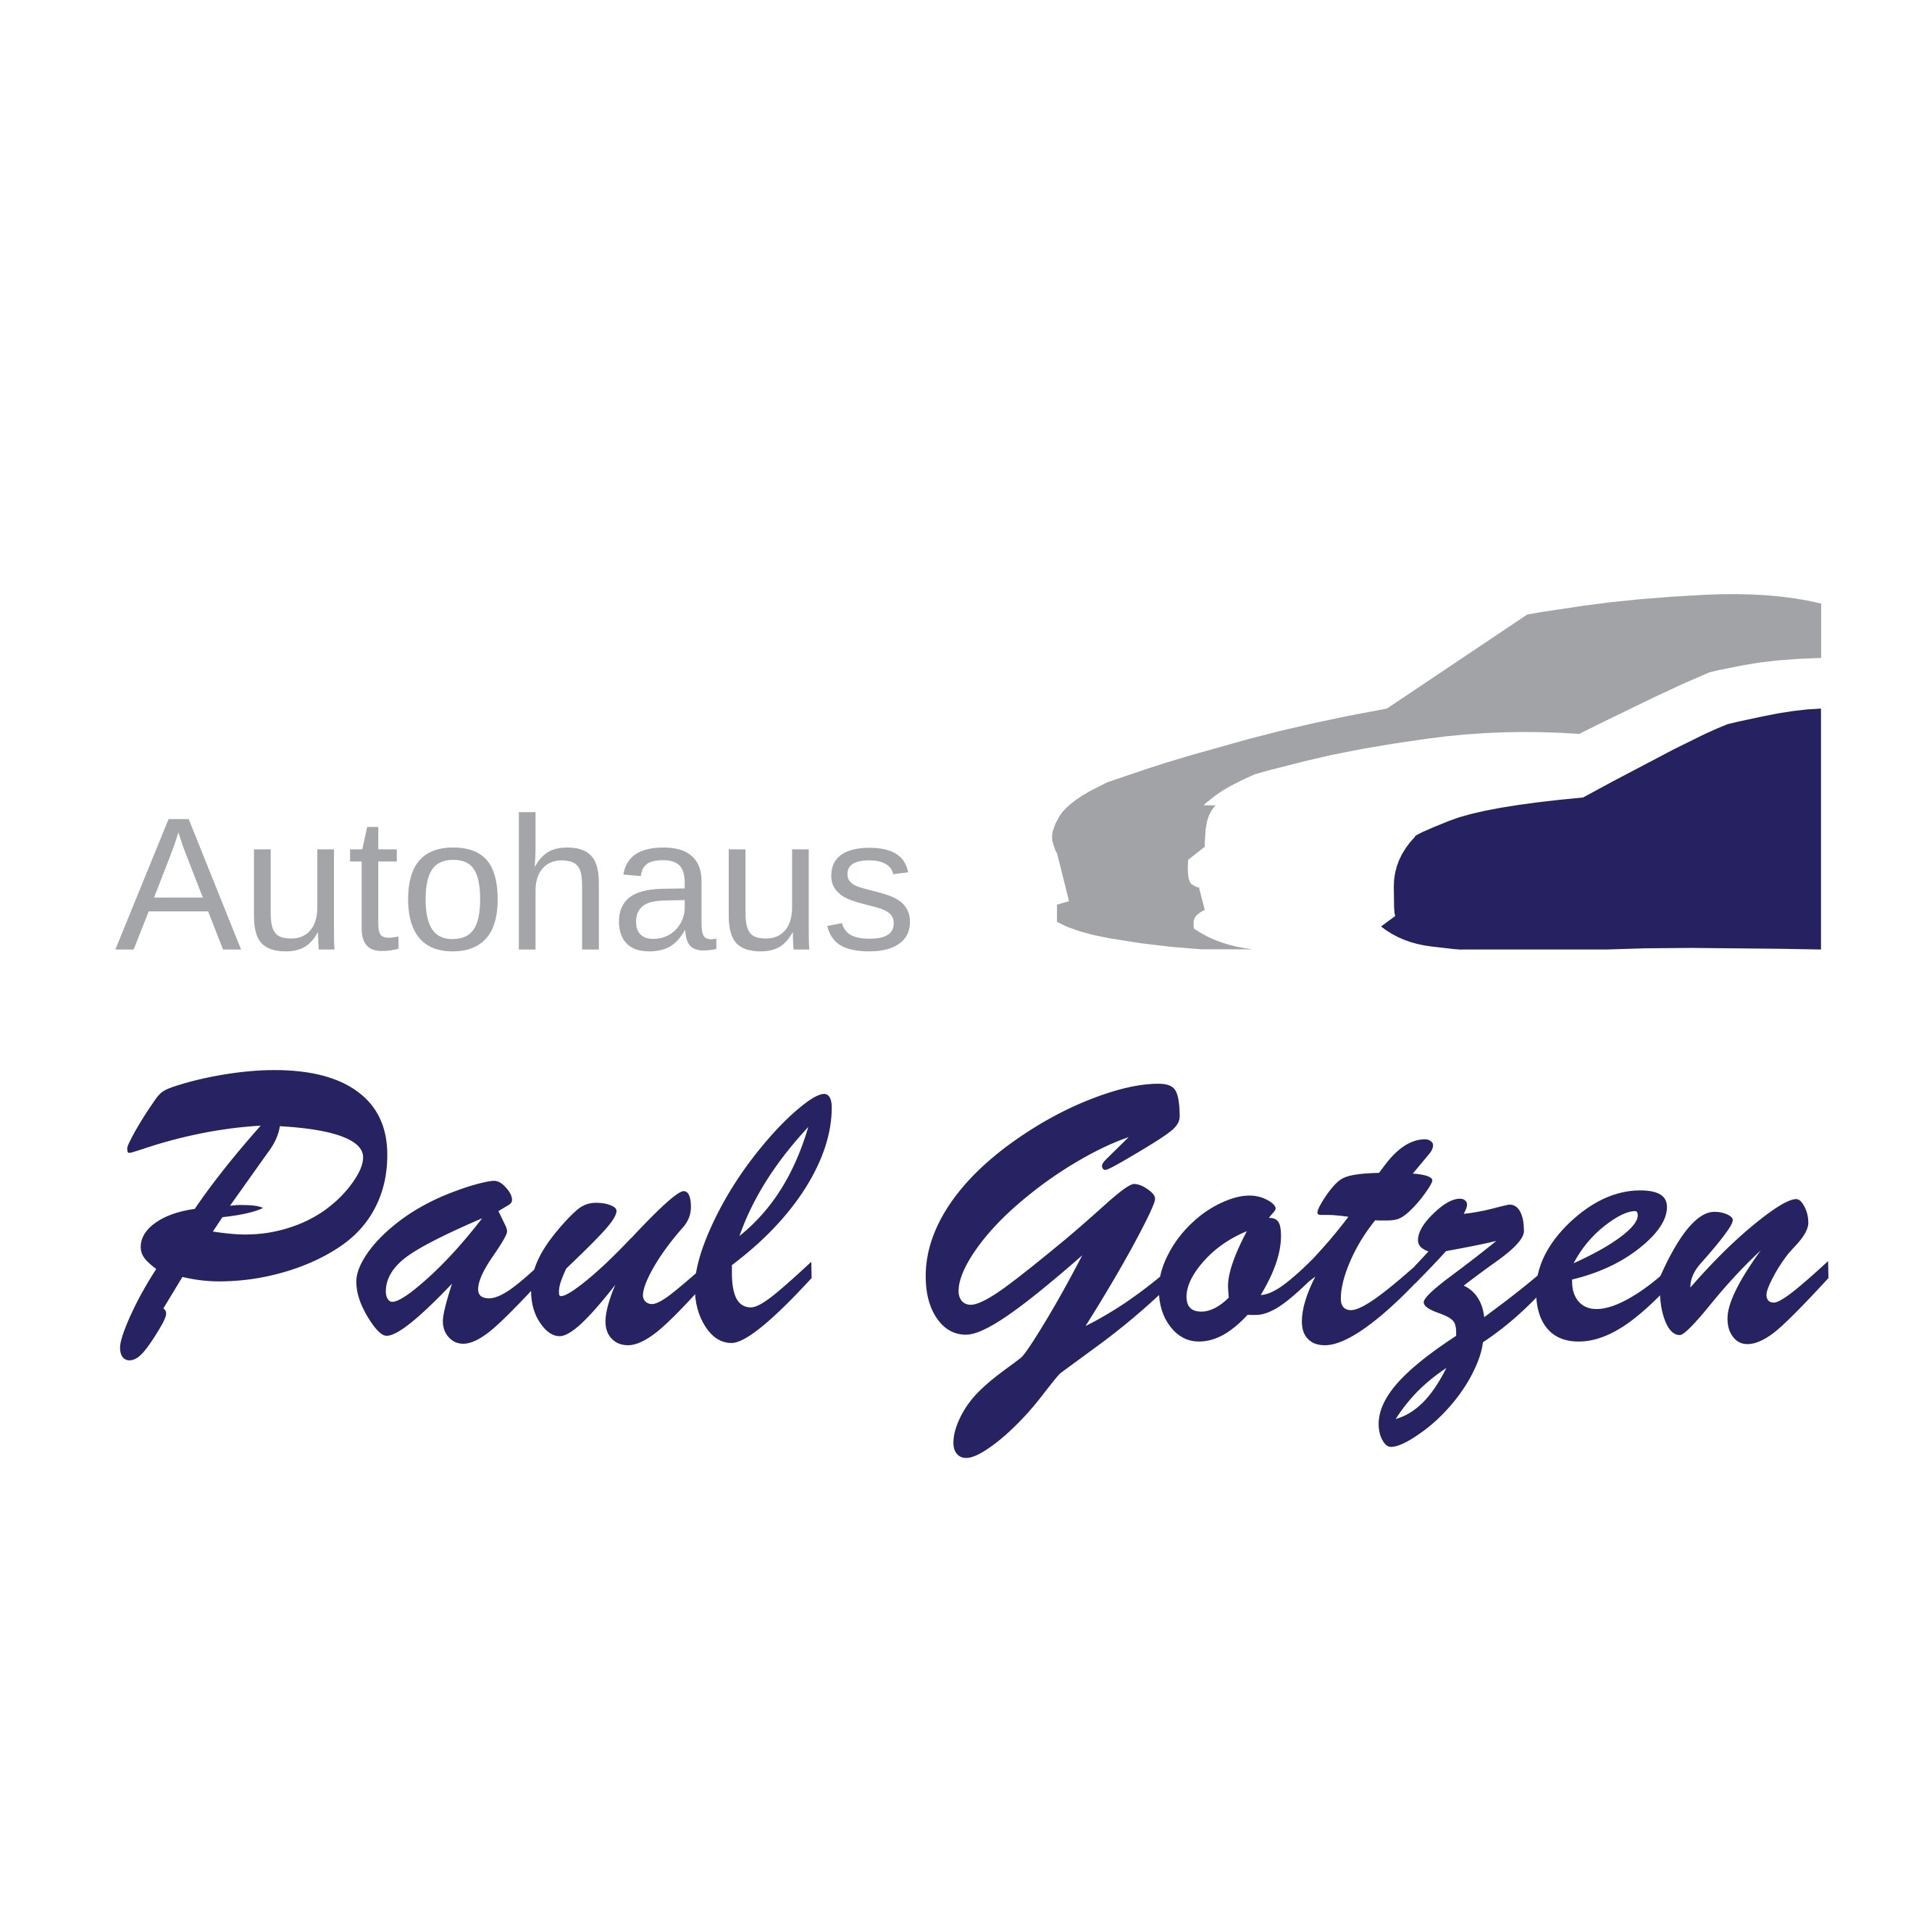 Paul Gotzen Viersen 02162 25575